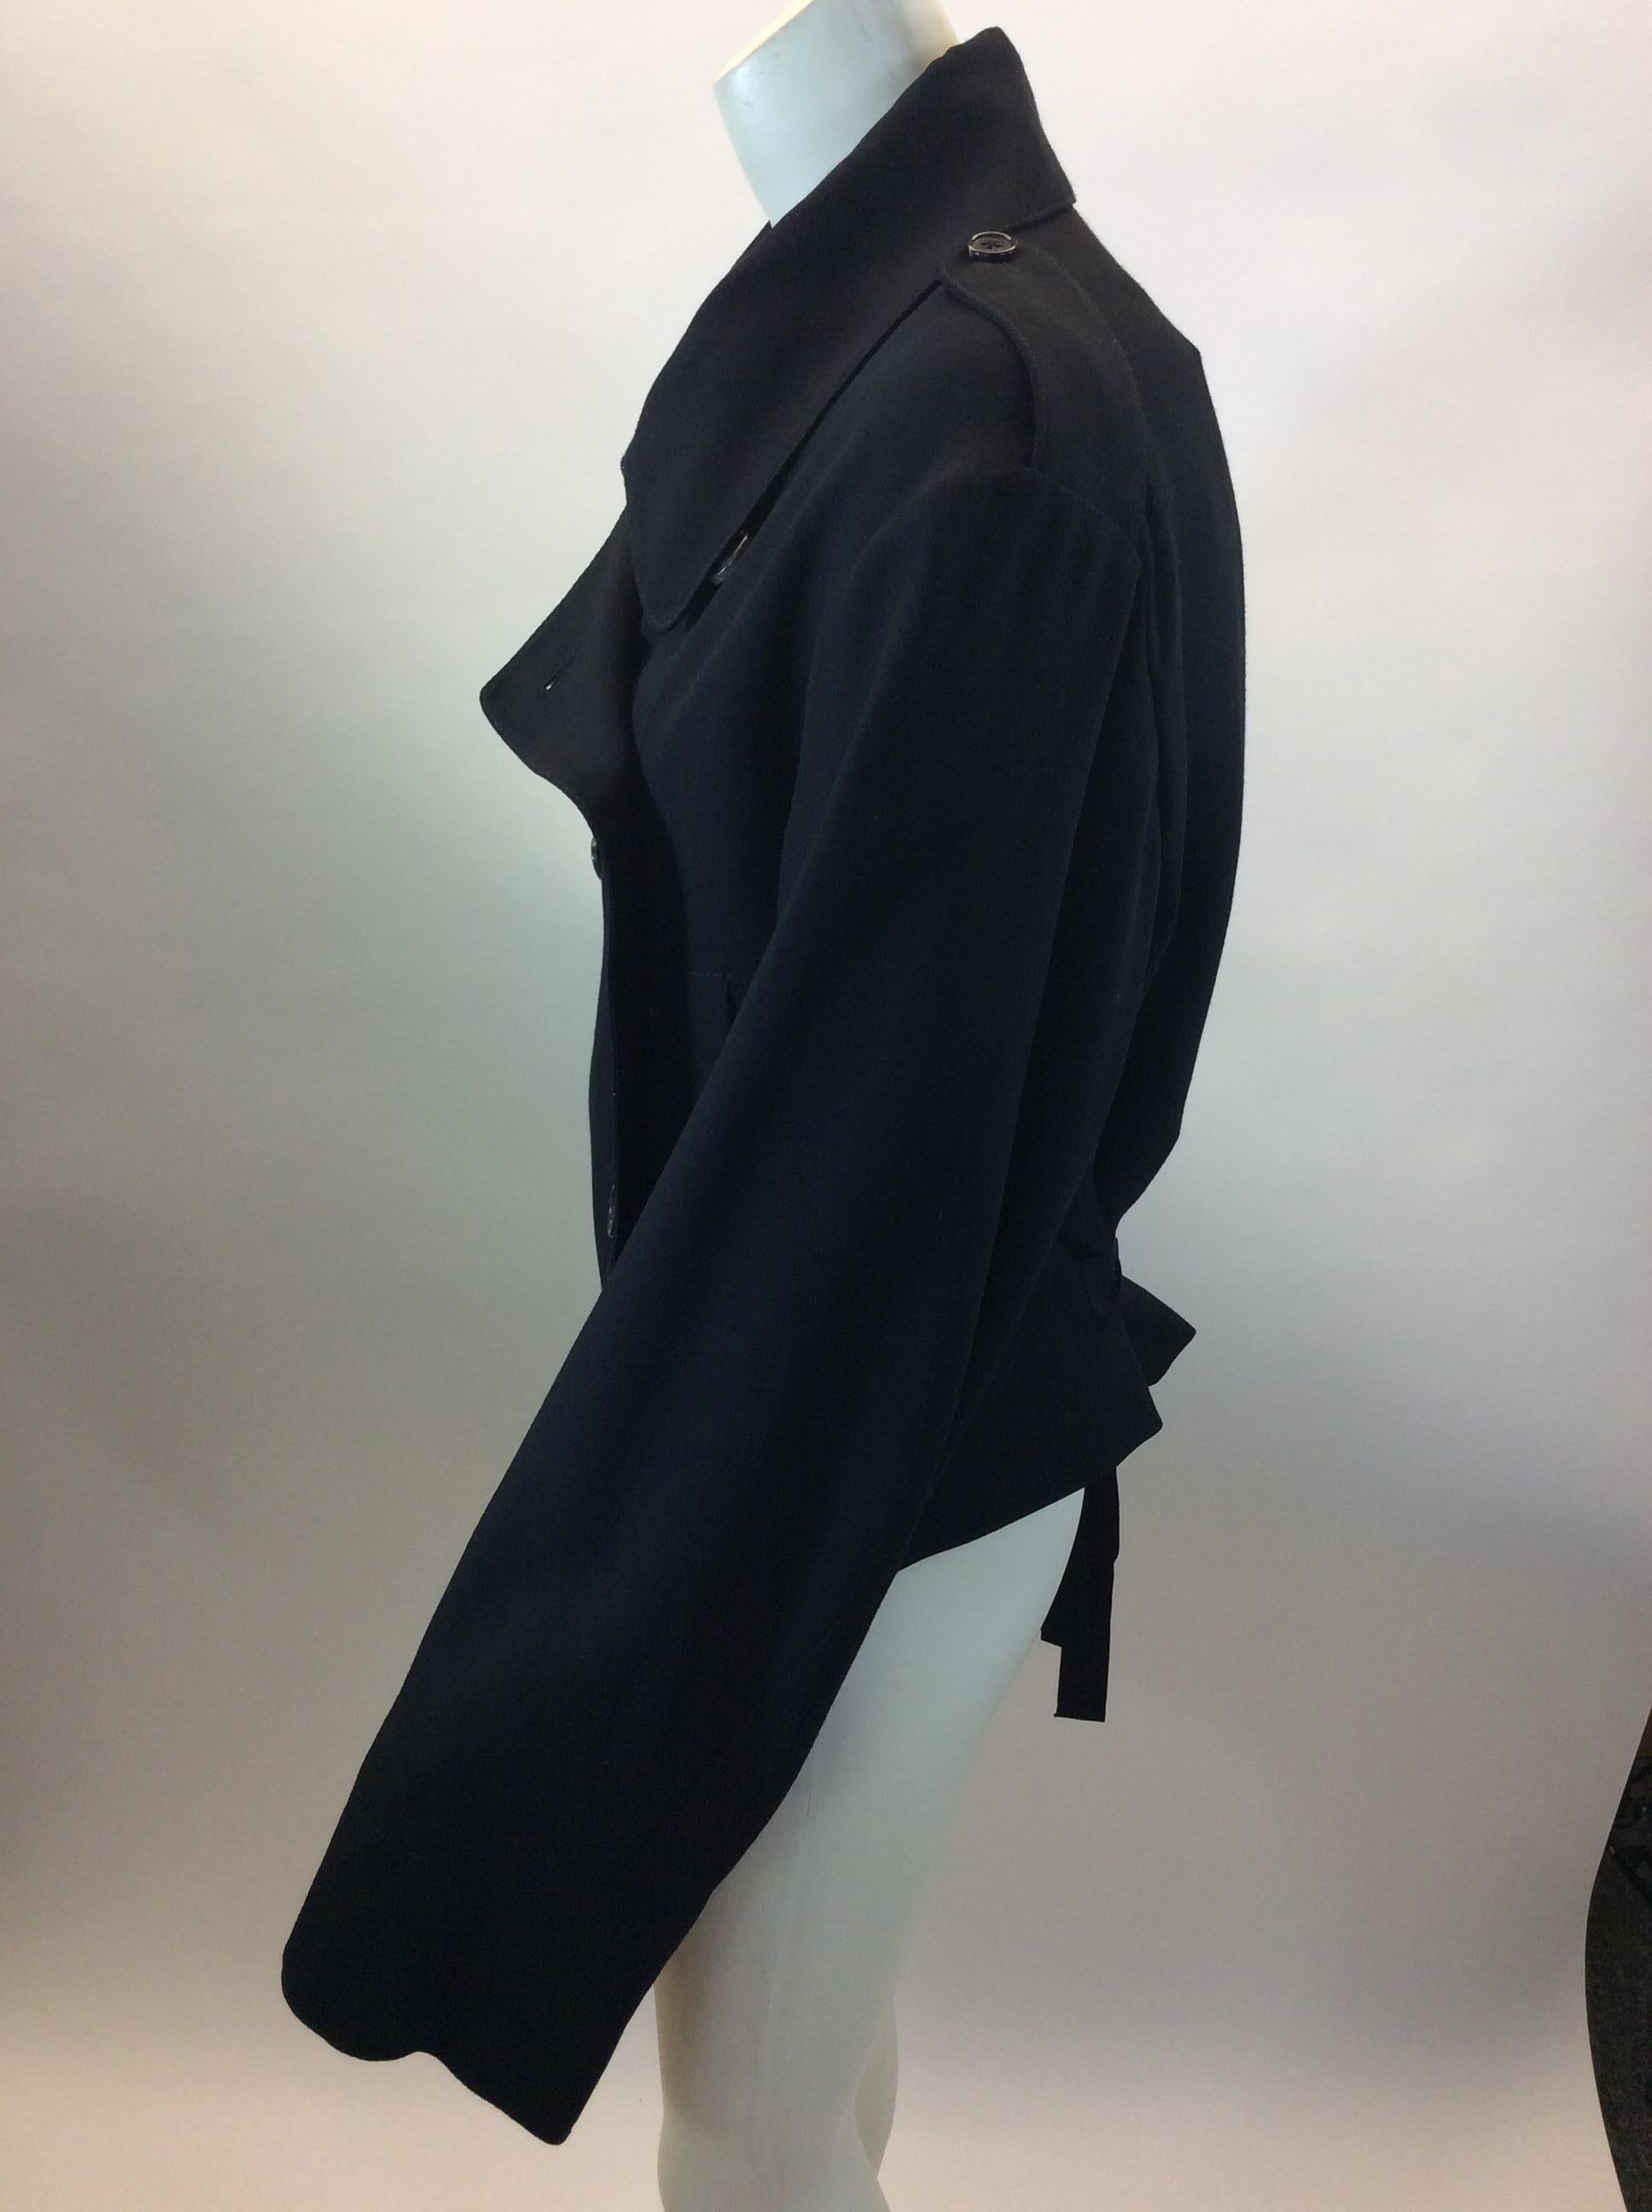 Ann Demeulemeester Black Wool Jacket
$350
Made in Portugal 
100% Fleece/wool
Size 40
Length 22